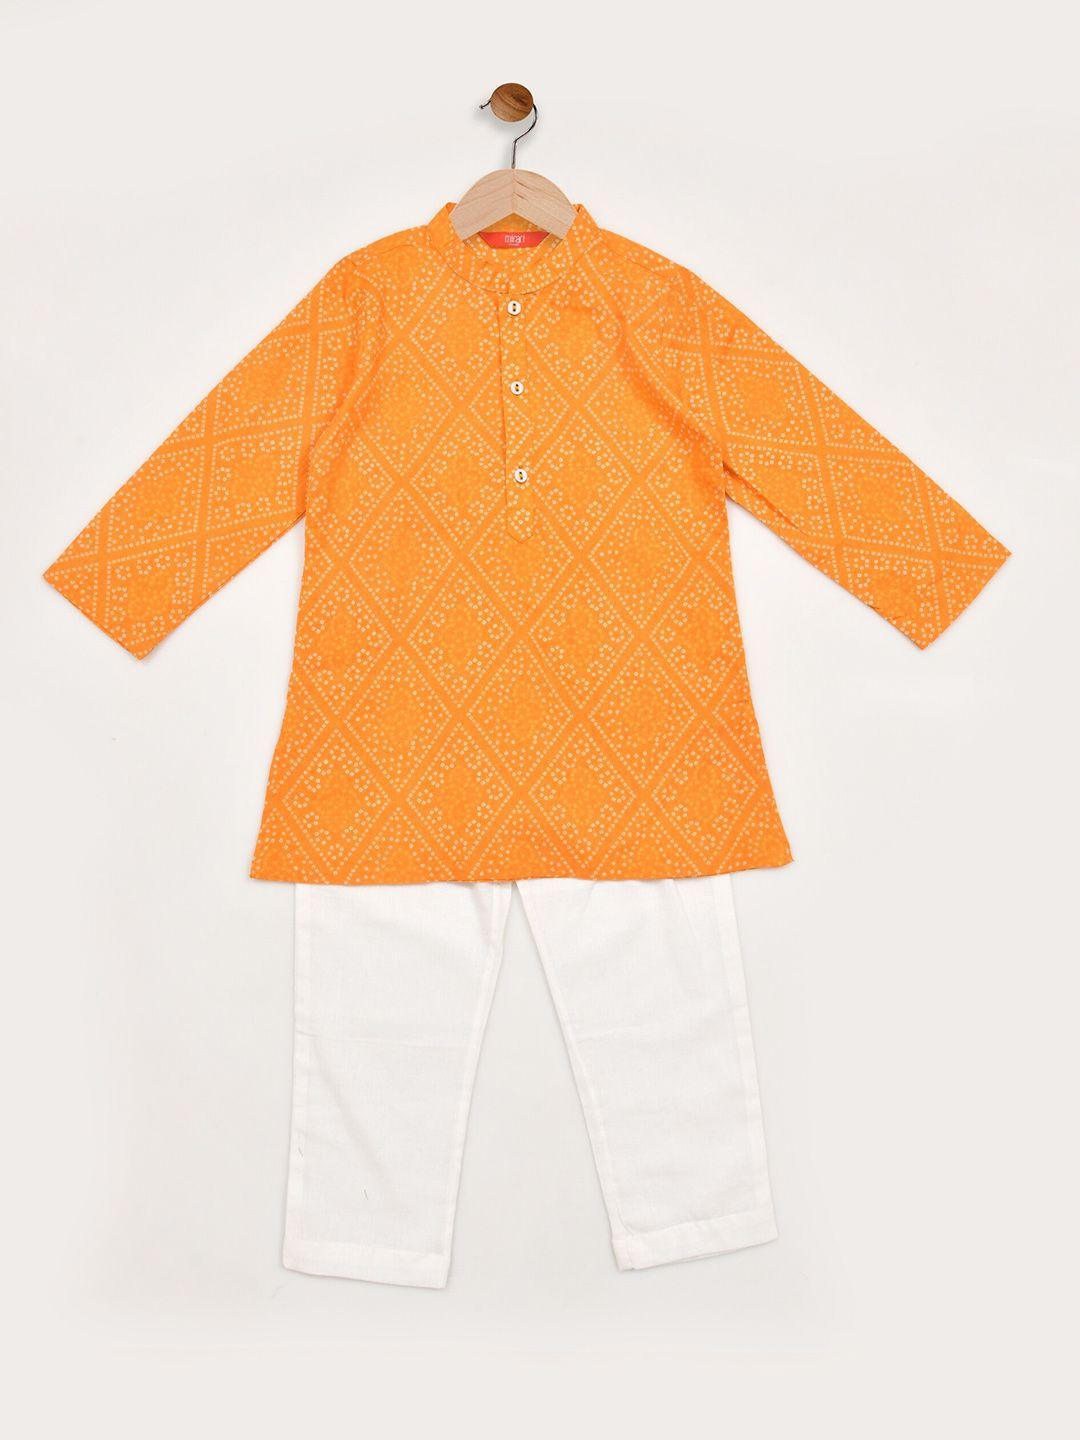 mirari boys orange bandhani printed regular pure cotton kurta with dhoti pants